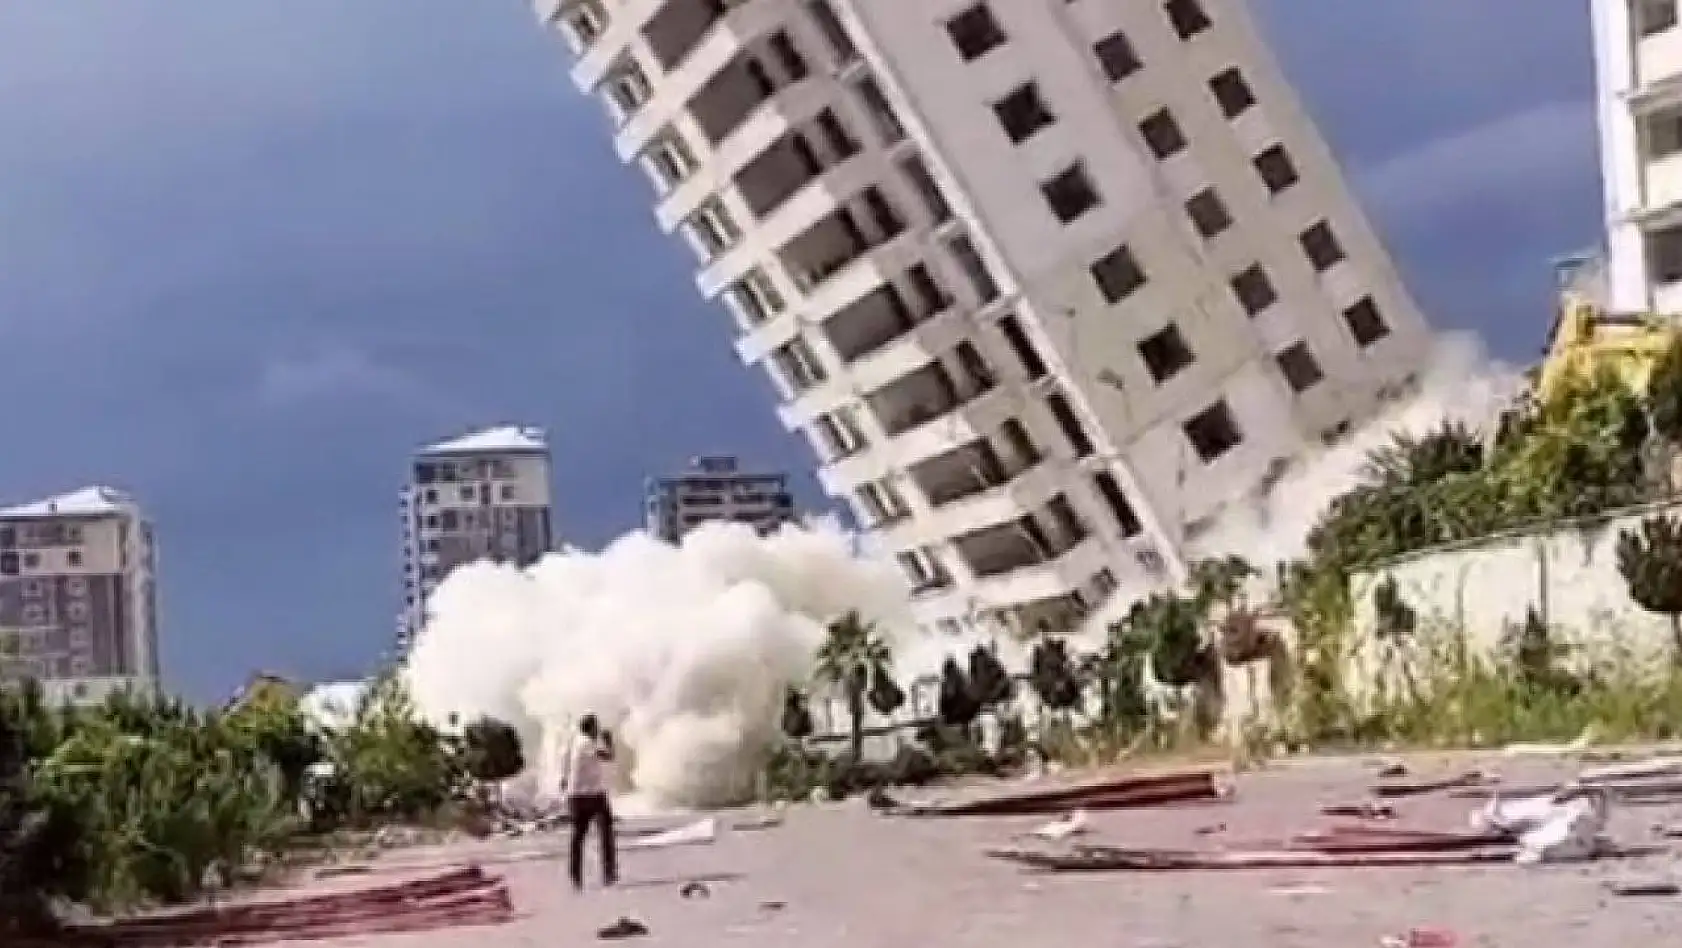 Hasarlı binanın yıkım sırasında çöktüğü anlar kamerada